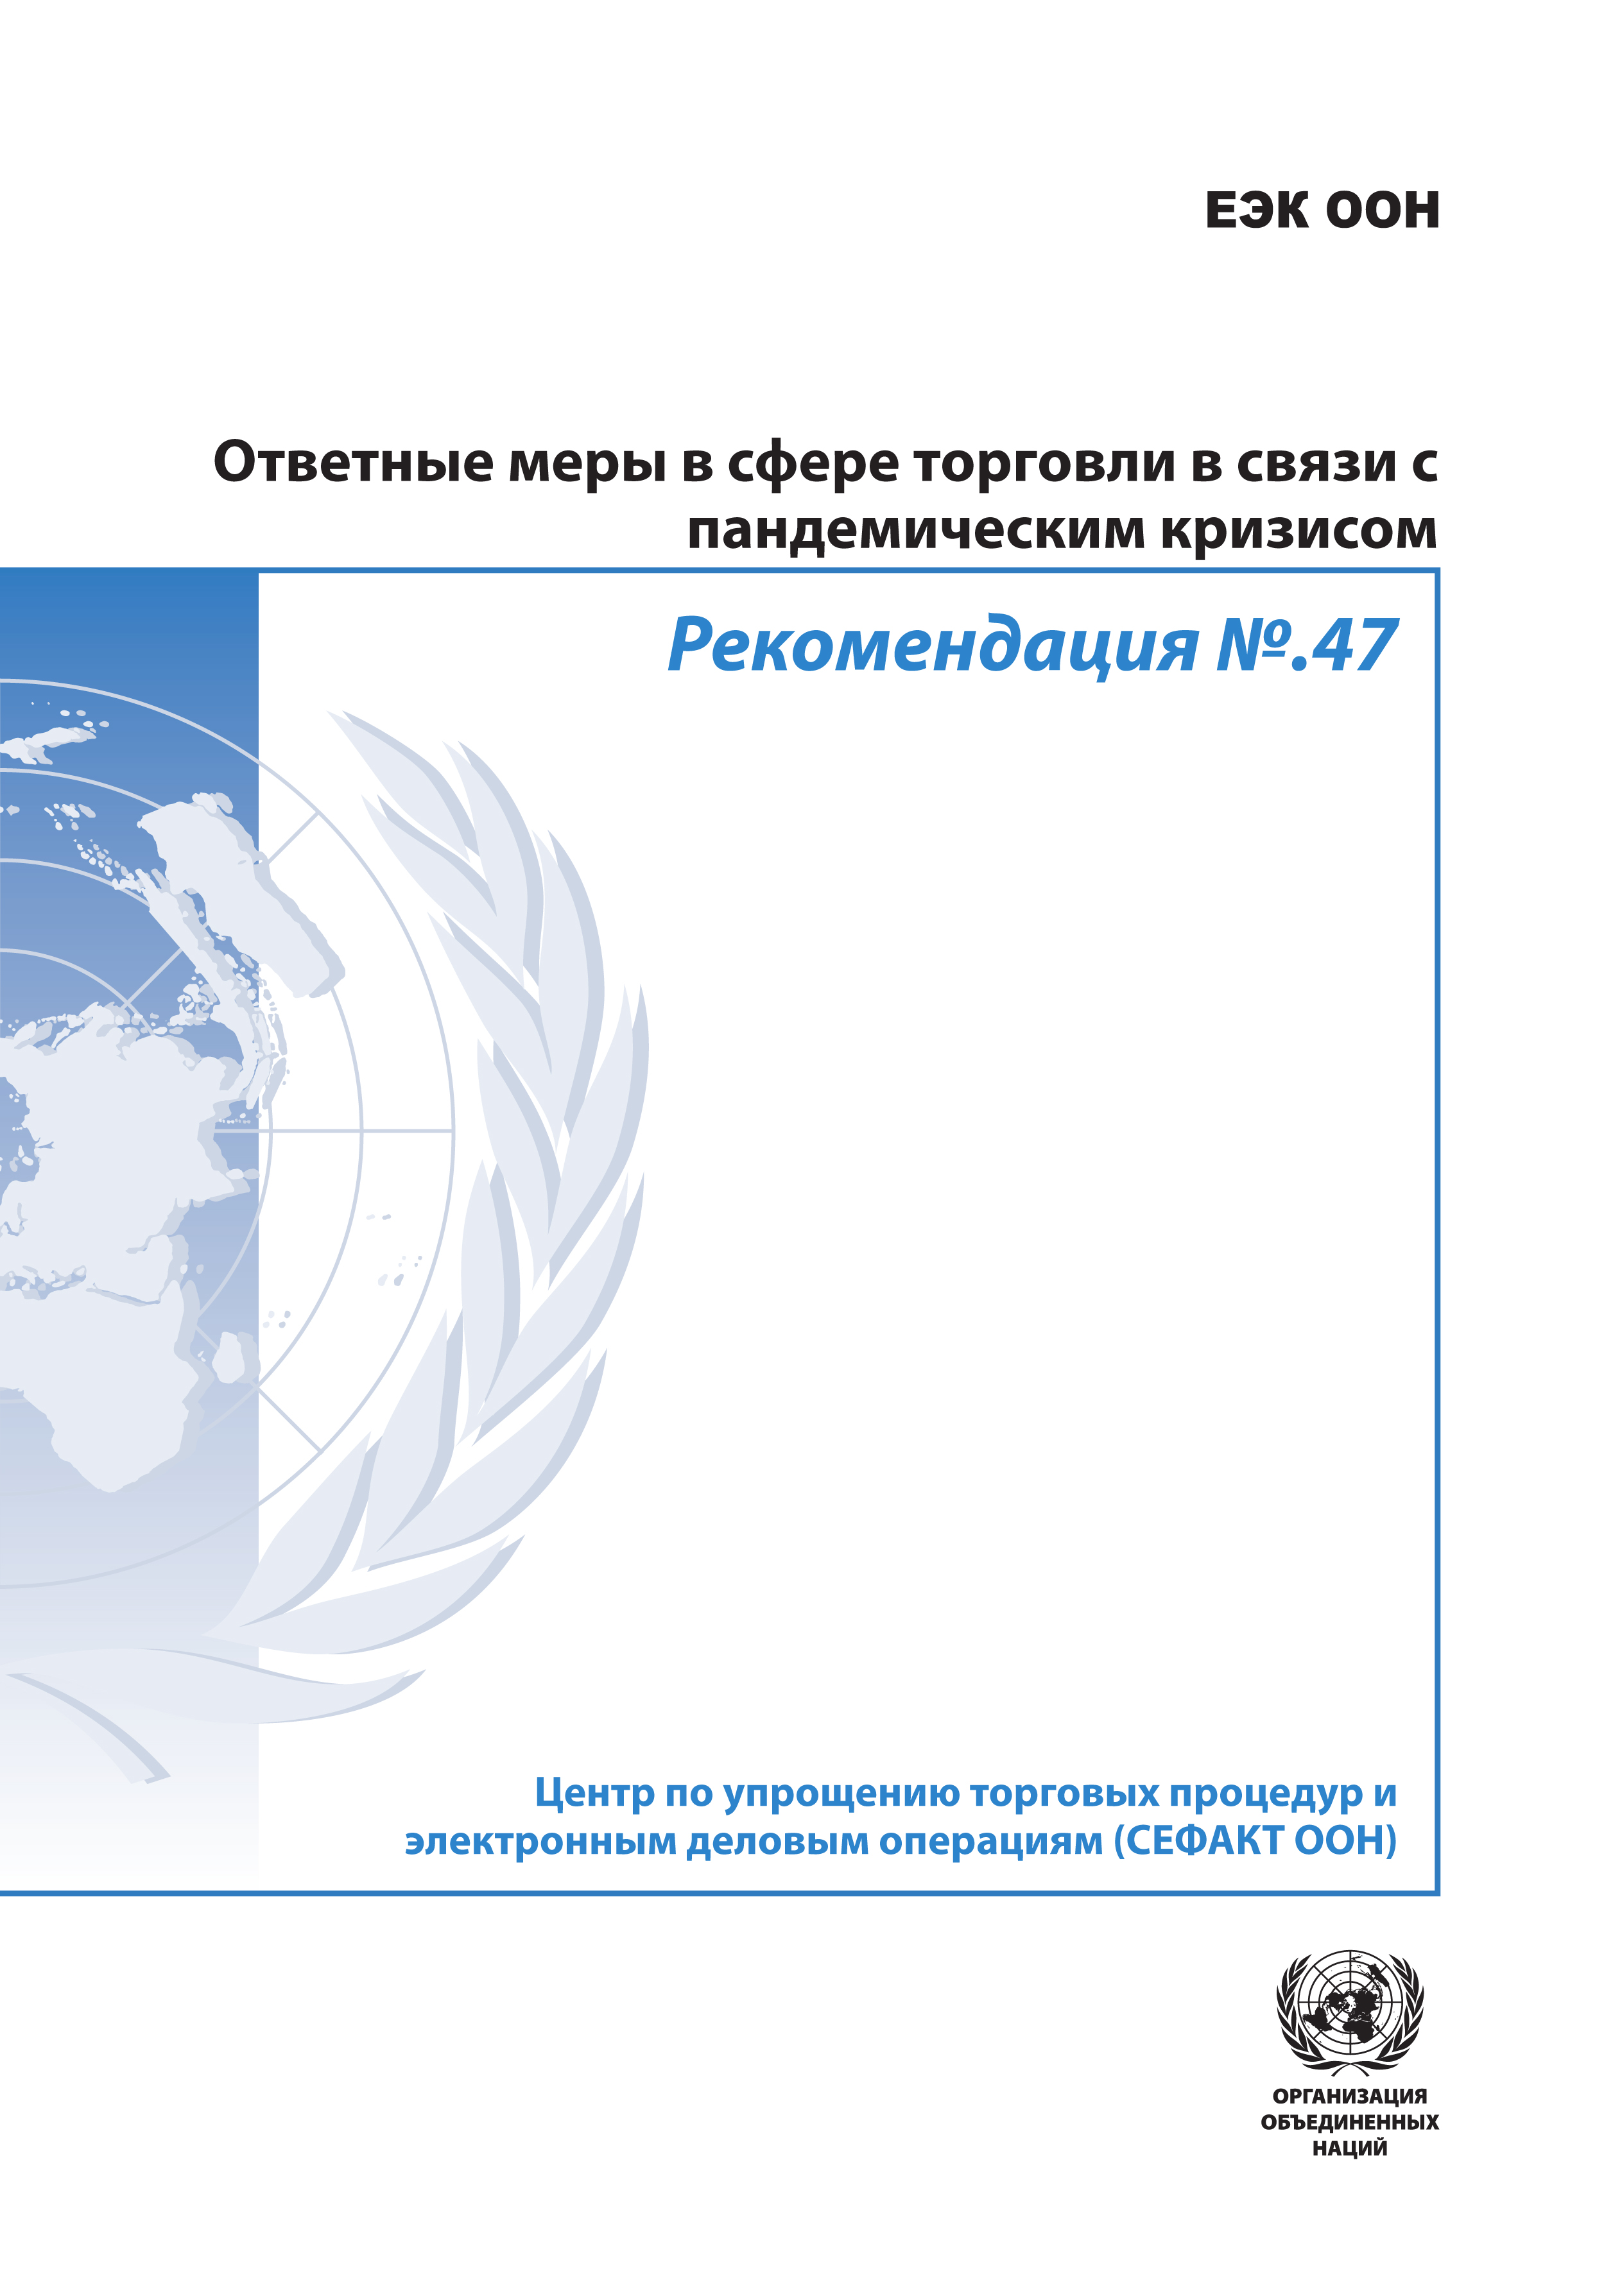 image of Рекомендация №.47: Ответные меры в сфере торговли в связи с пандемическим кризисом